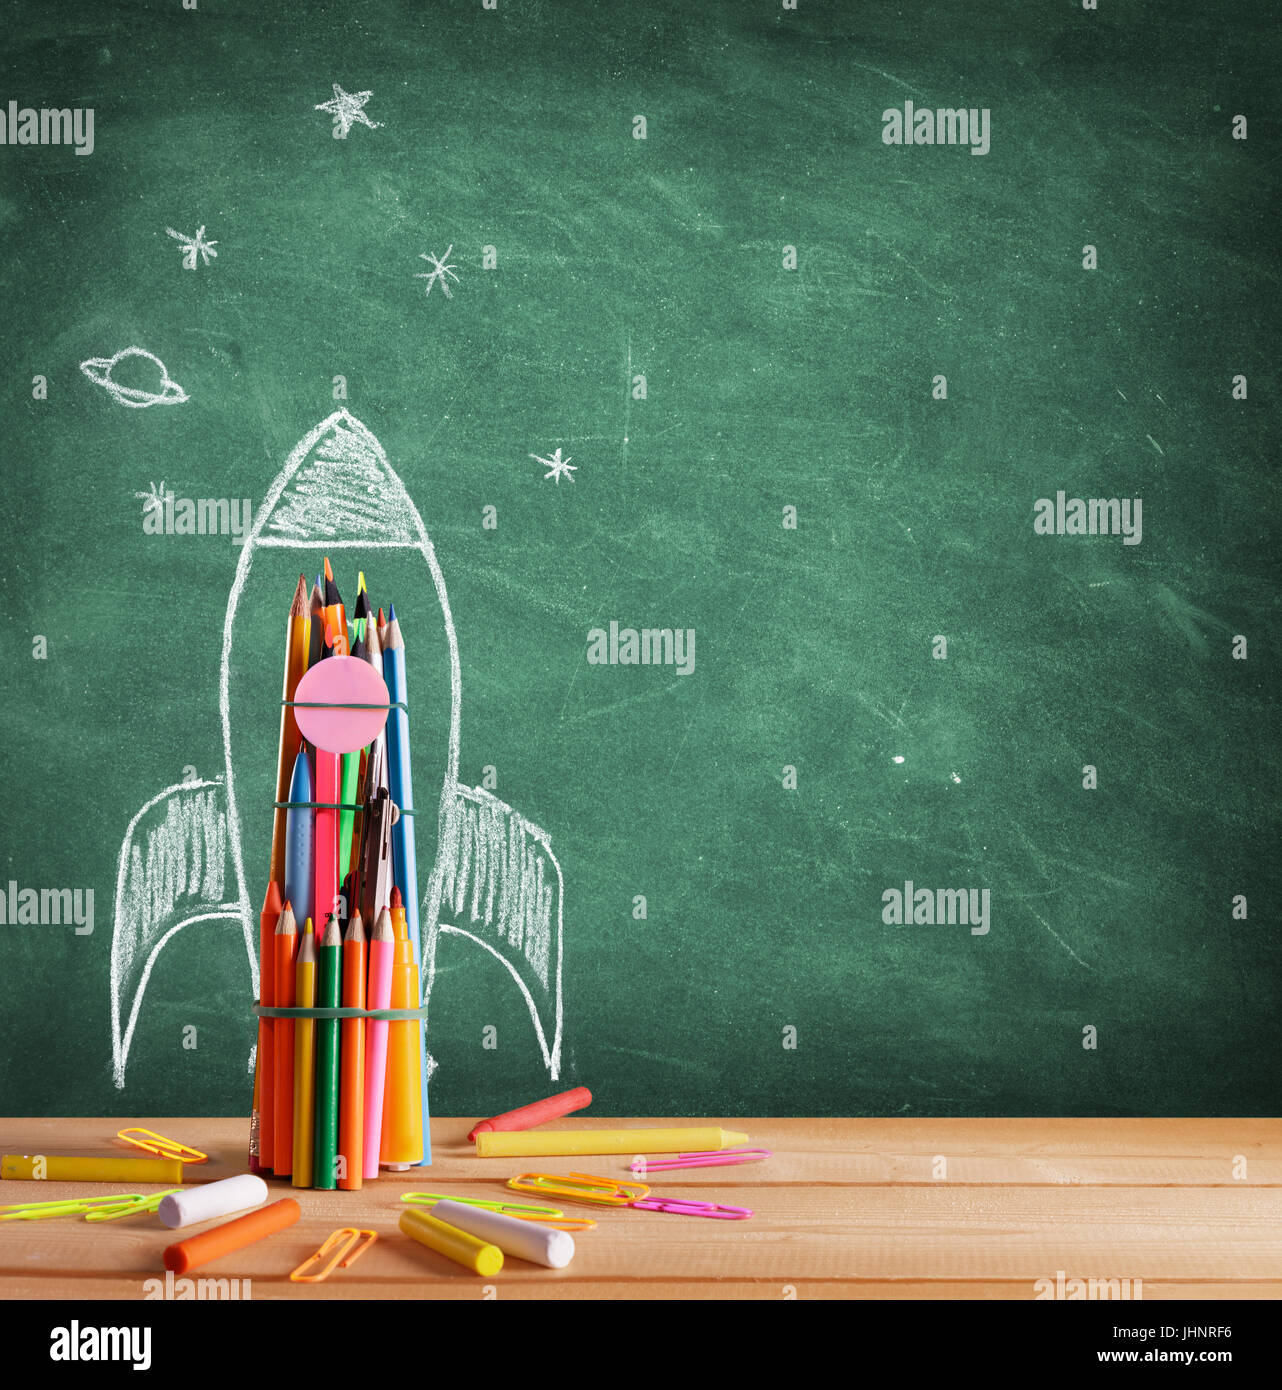 Back To School - Rocket Sketch On Blackboard Stock Photo